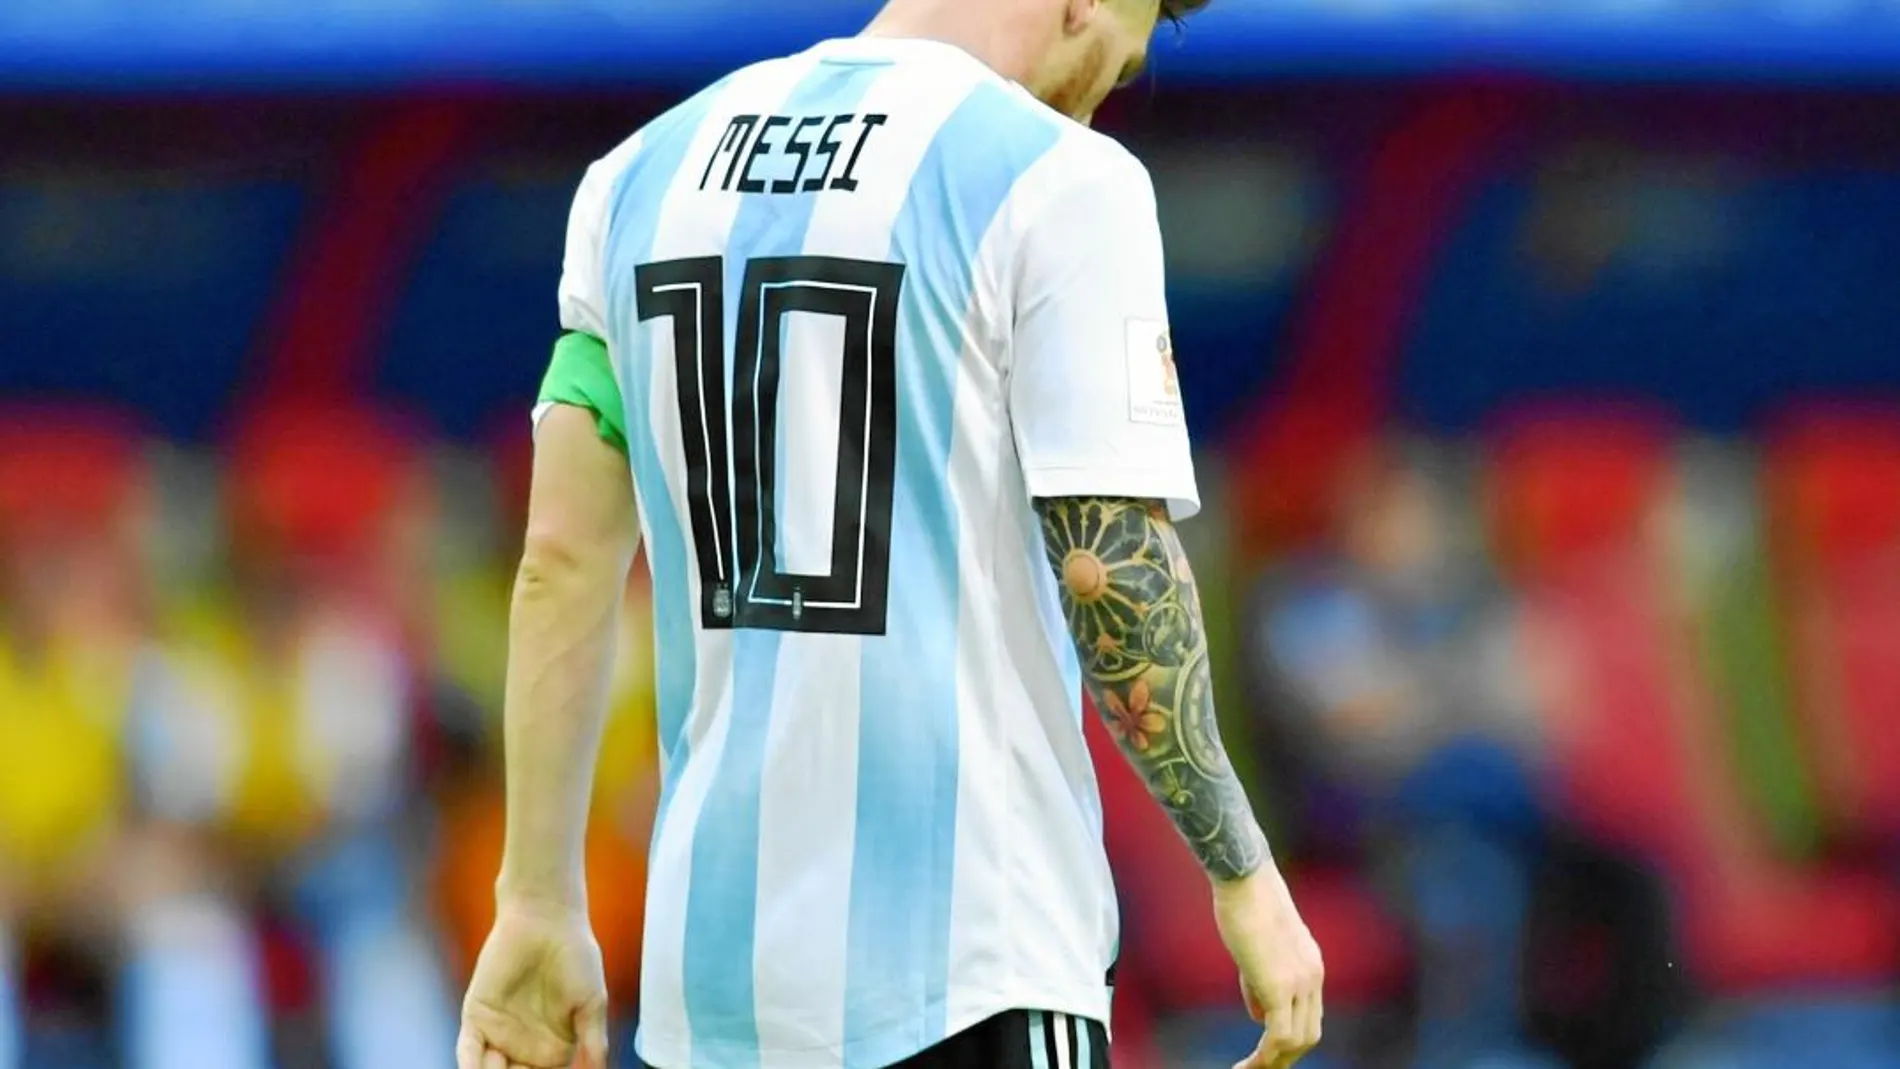 Cara a cara: ¿Se asusta Messi cuando juega con Argentina?